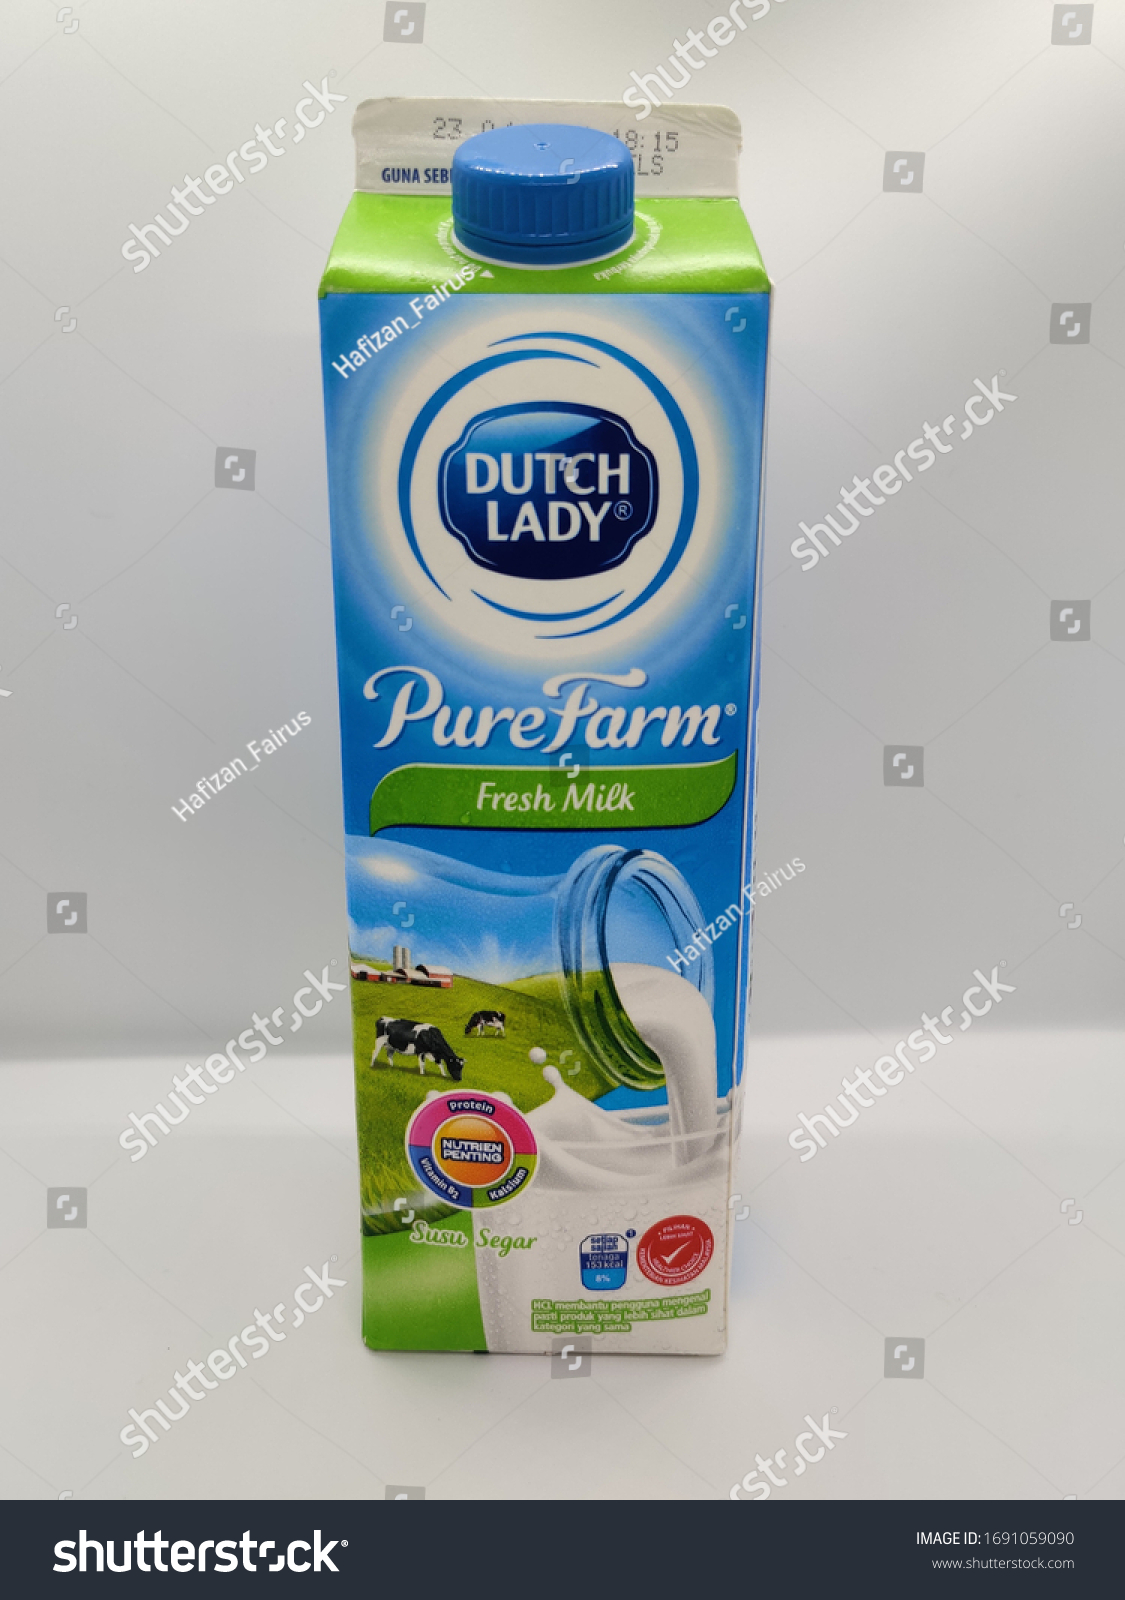 Milk fresh dutch lady Dutch Lady